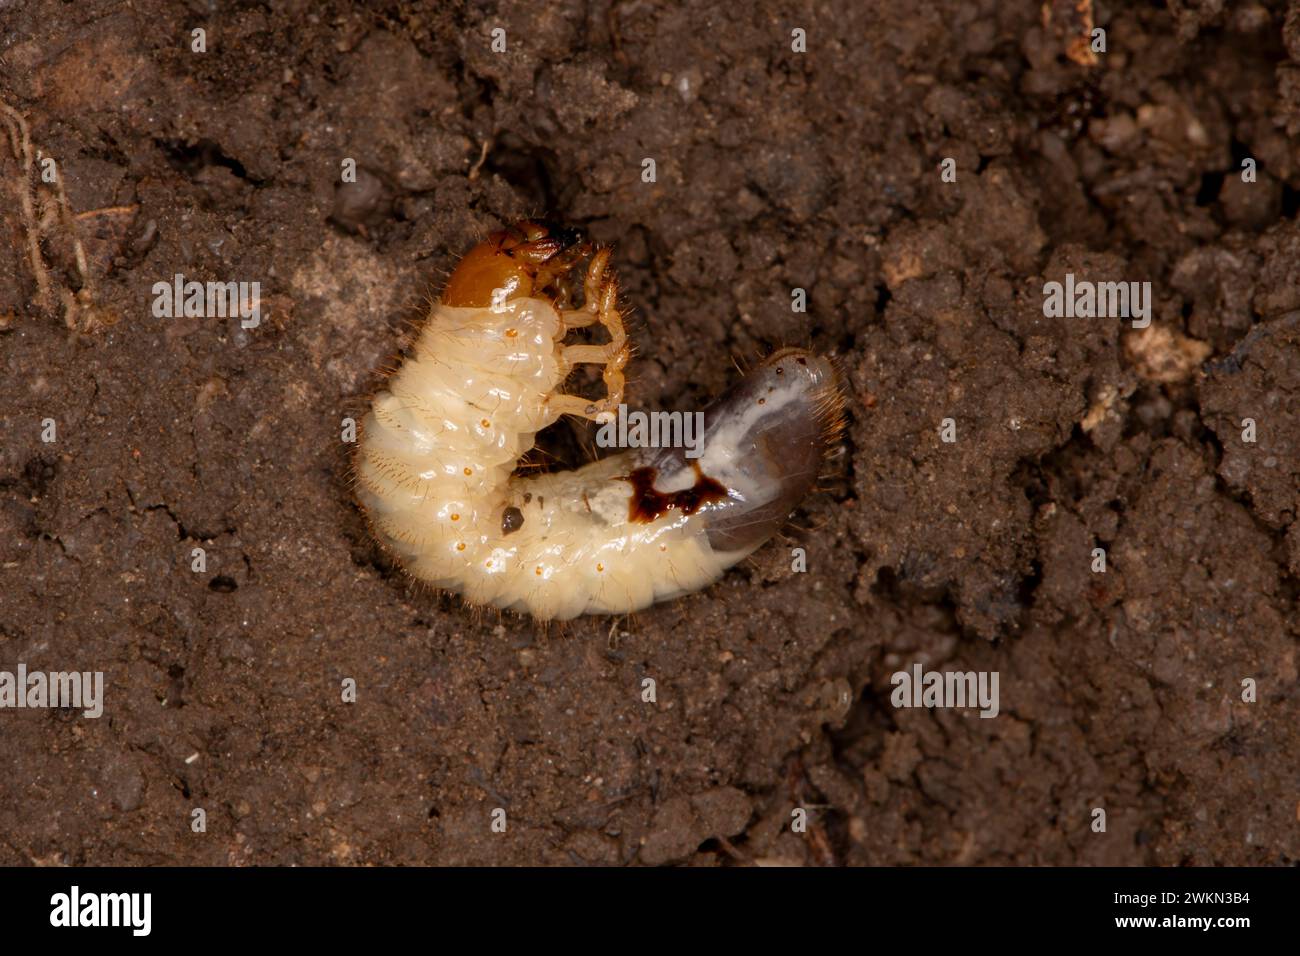 Lansing, Kansas. Verme bianco trovato sotto una roccia. I vermi sono le larve immature di diverse specie di scarabeo. Sono estremamente destru Foto Stock